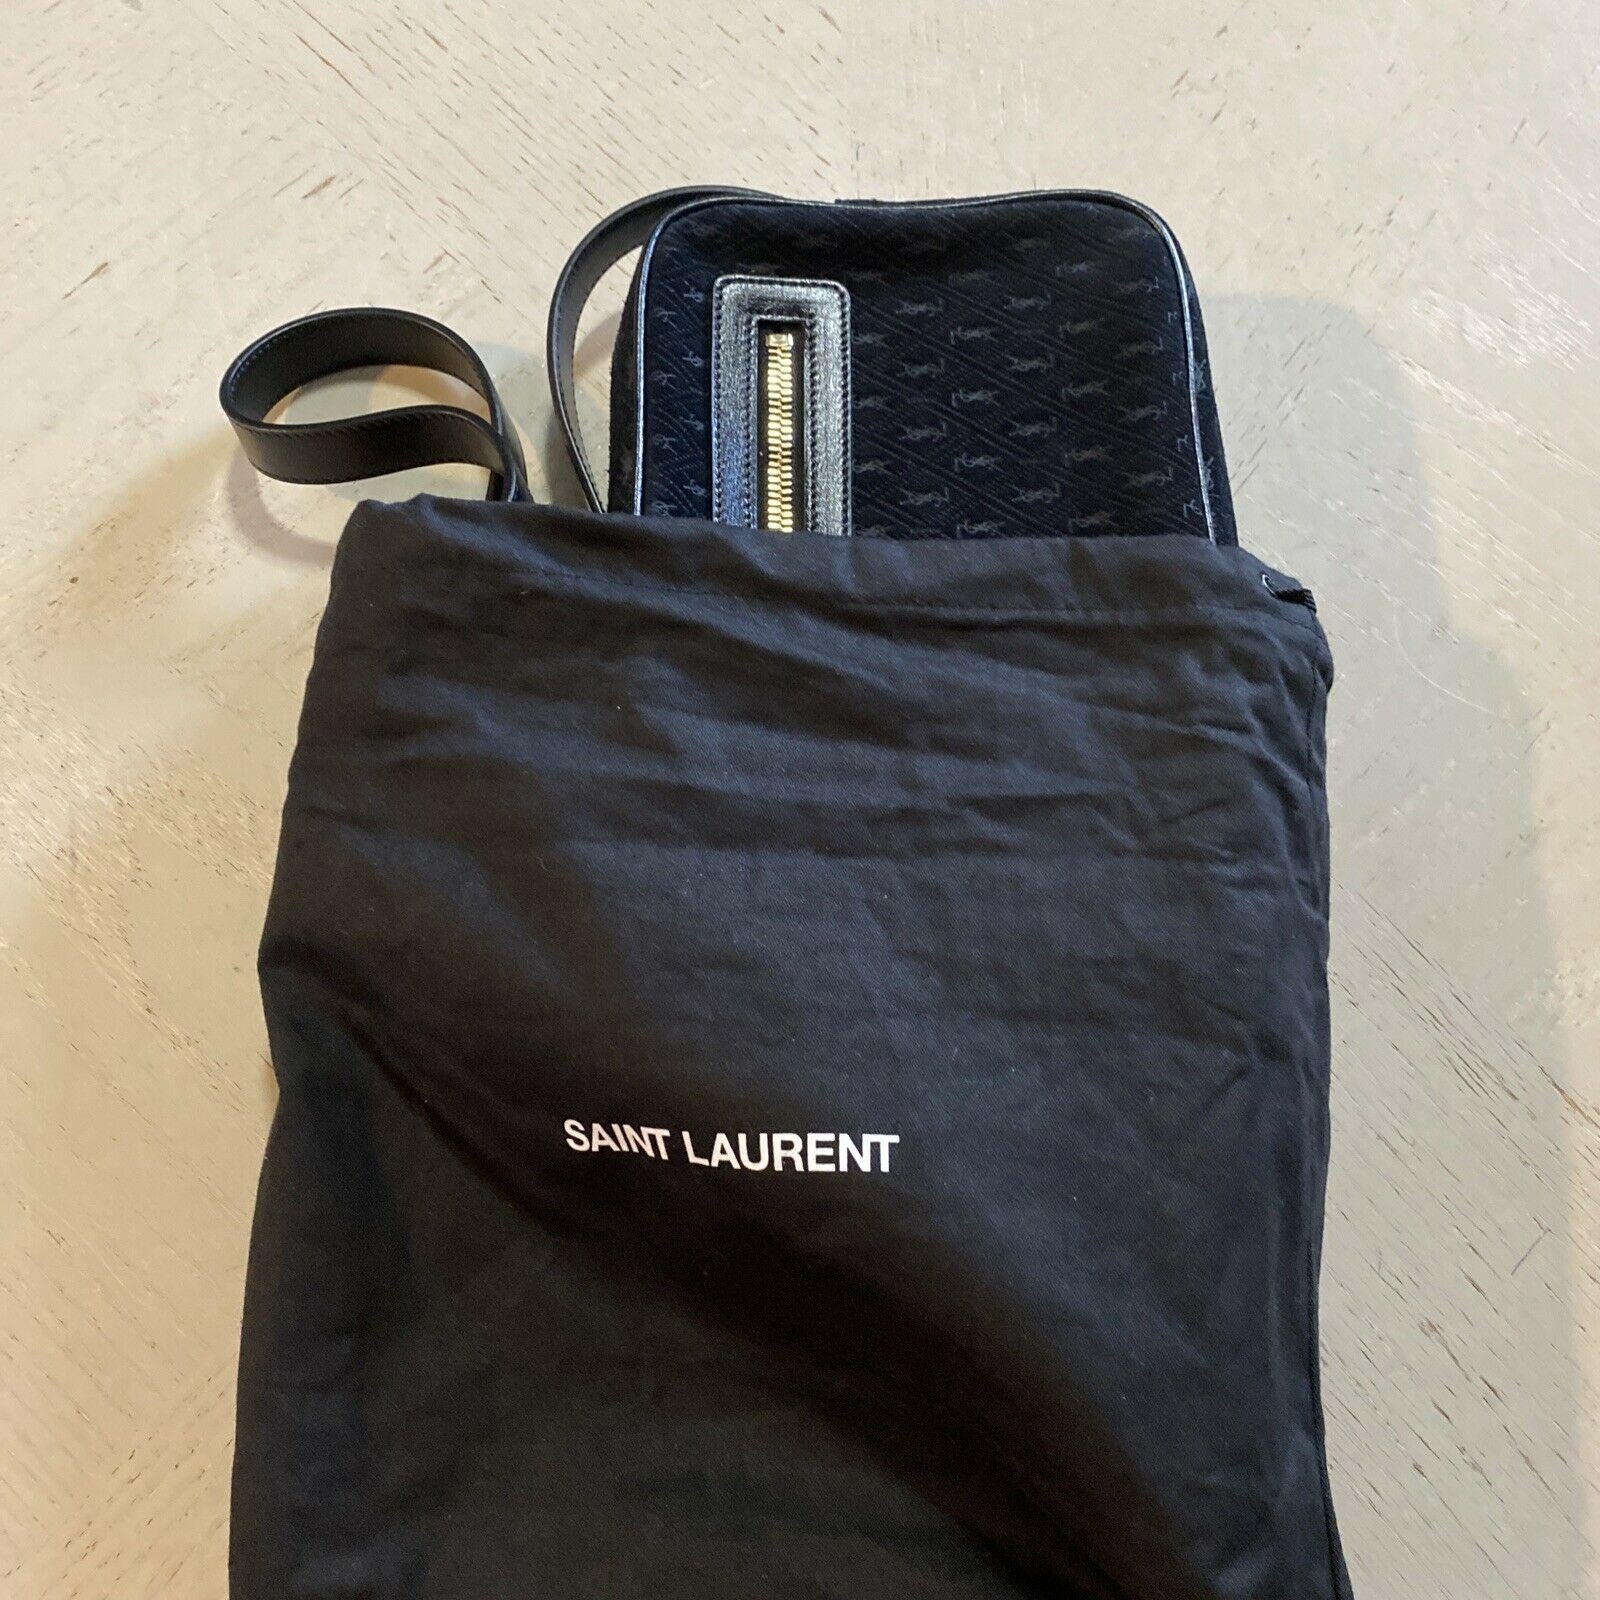 Новая кожаная/замшевая сумка через плечо Saint Laurent за 1850 долларов, черная 568608